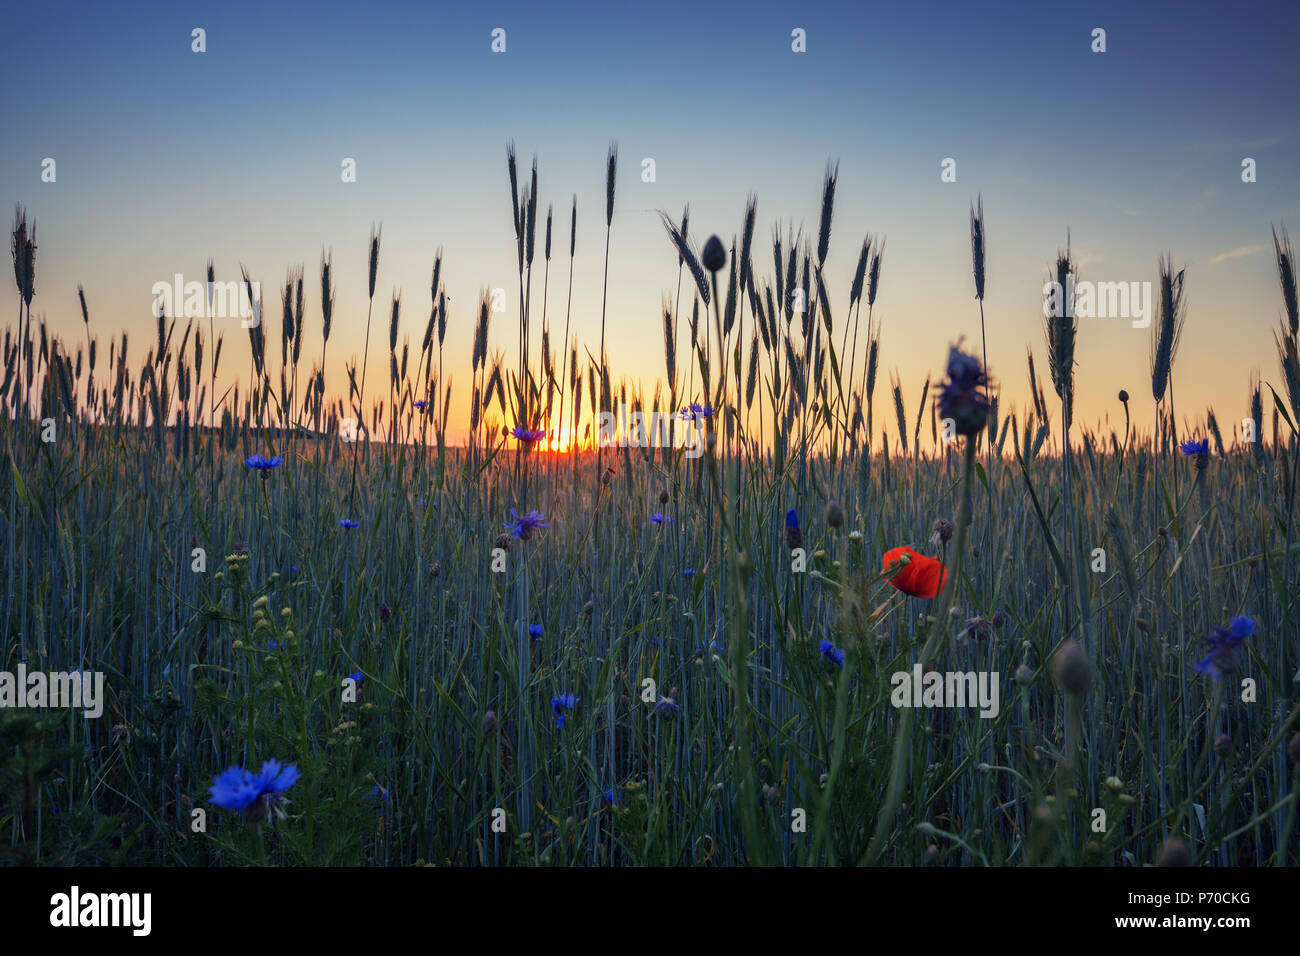 Blue cornflowers on summer wheat field in warm sunset light Stock Photo